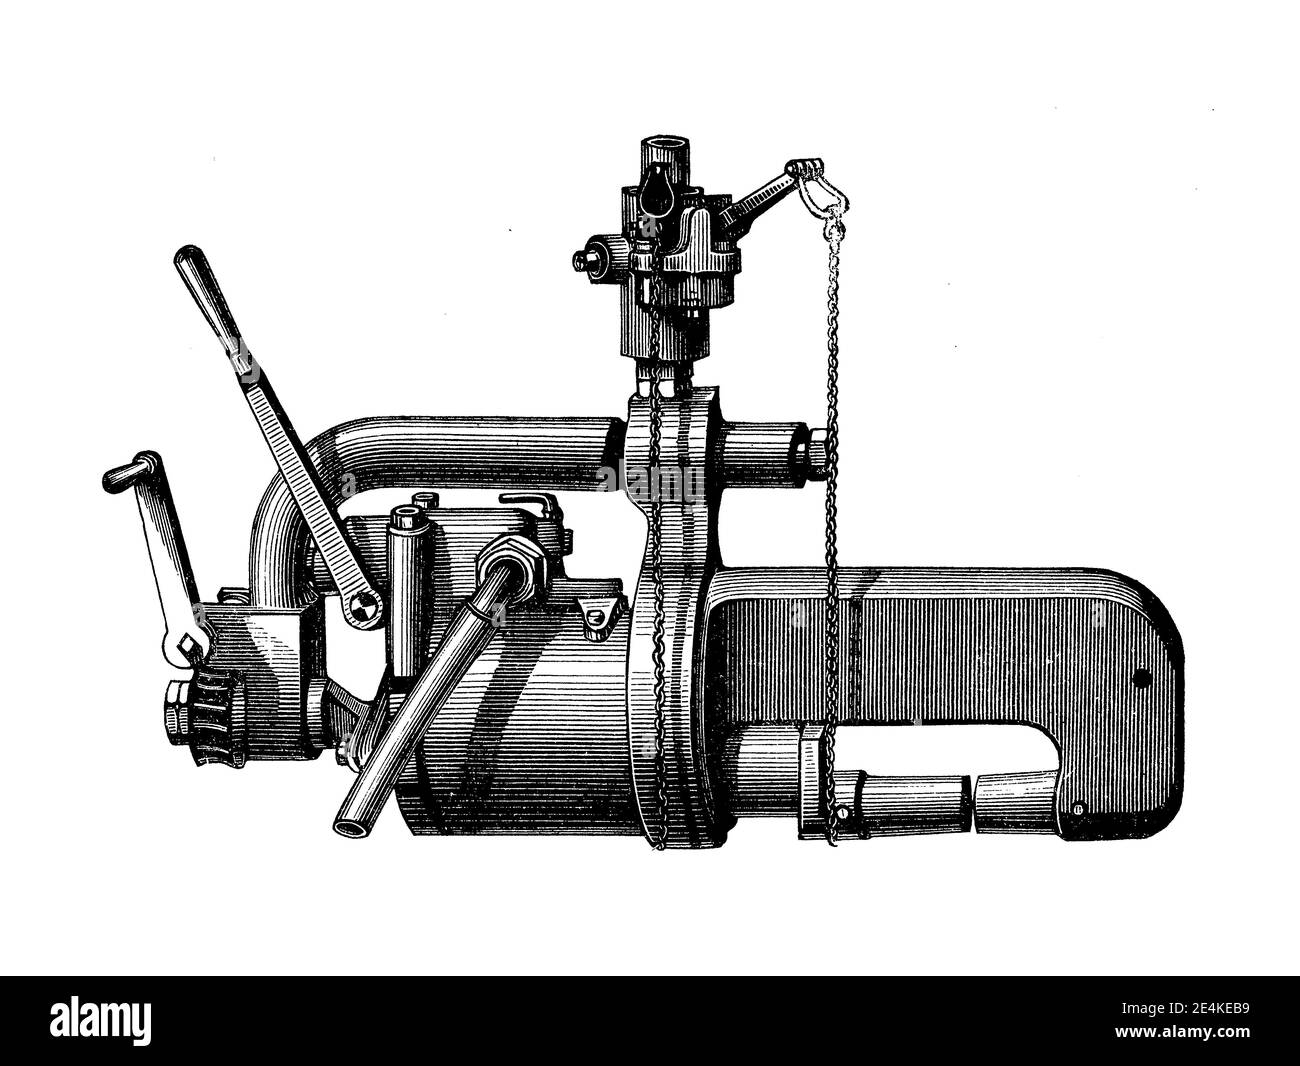 El remachador hidráulico portátil inventado por Ralph Hart Tweddell facilitó enormemente la construcción de calderas; puentes y naves; grabado del siglo XIX Foto de stock